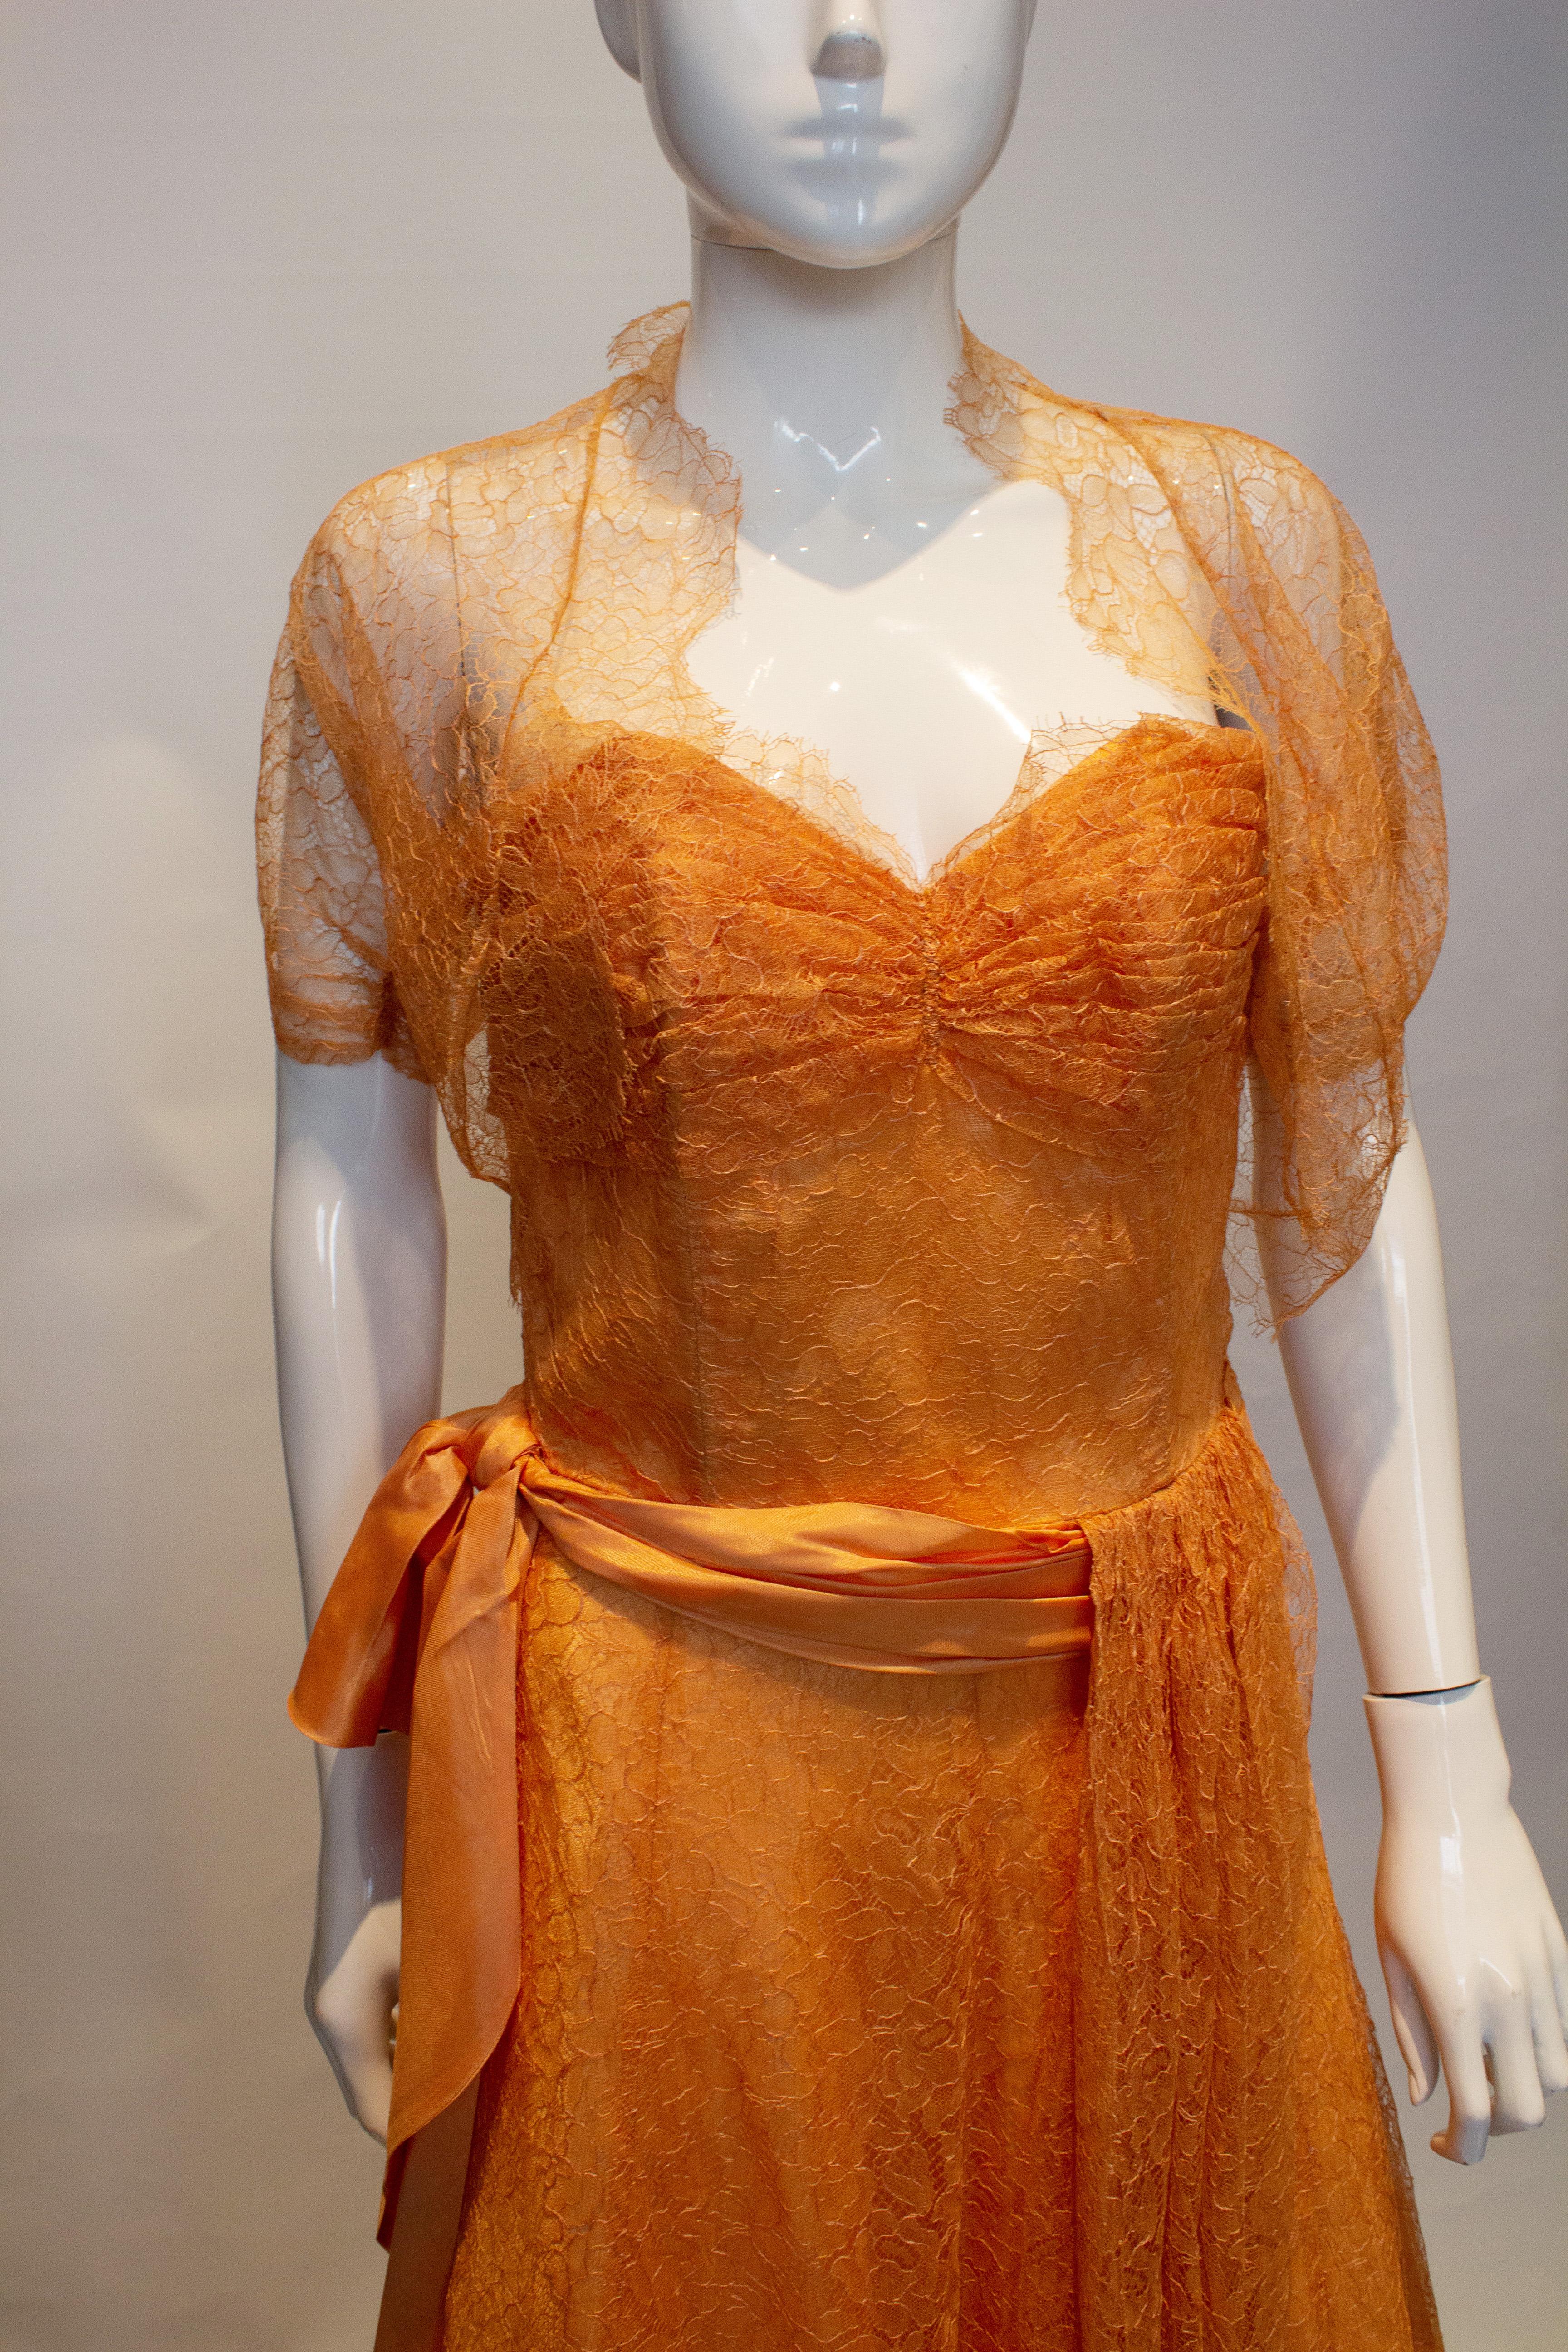 Une jolie robe vintage en dentelle couleur abricot  avec un boléro assorti. La robe est sans bretelles, avec des os dans le corsage et une fermeture éclair latérale. Il est doté d'une large ceinture en ruban et d'un drapé en dentelle.
Mesures : Robe